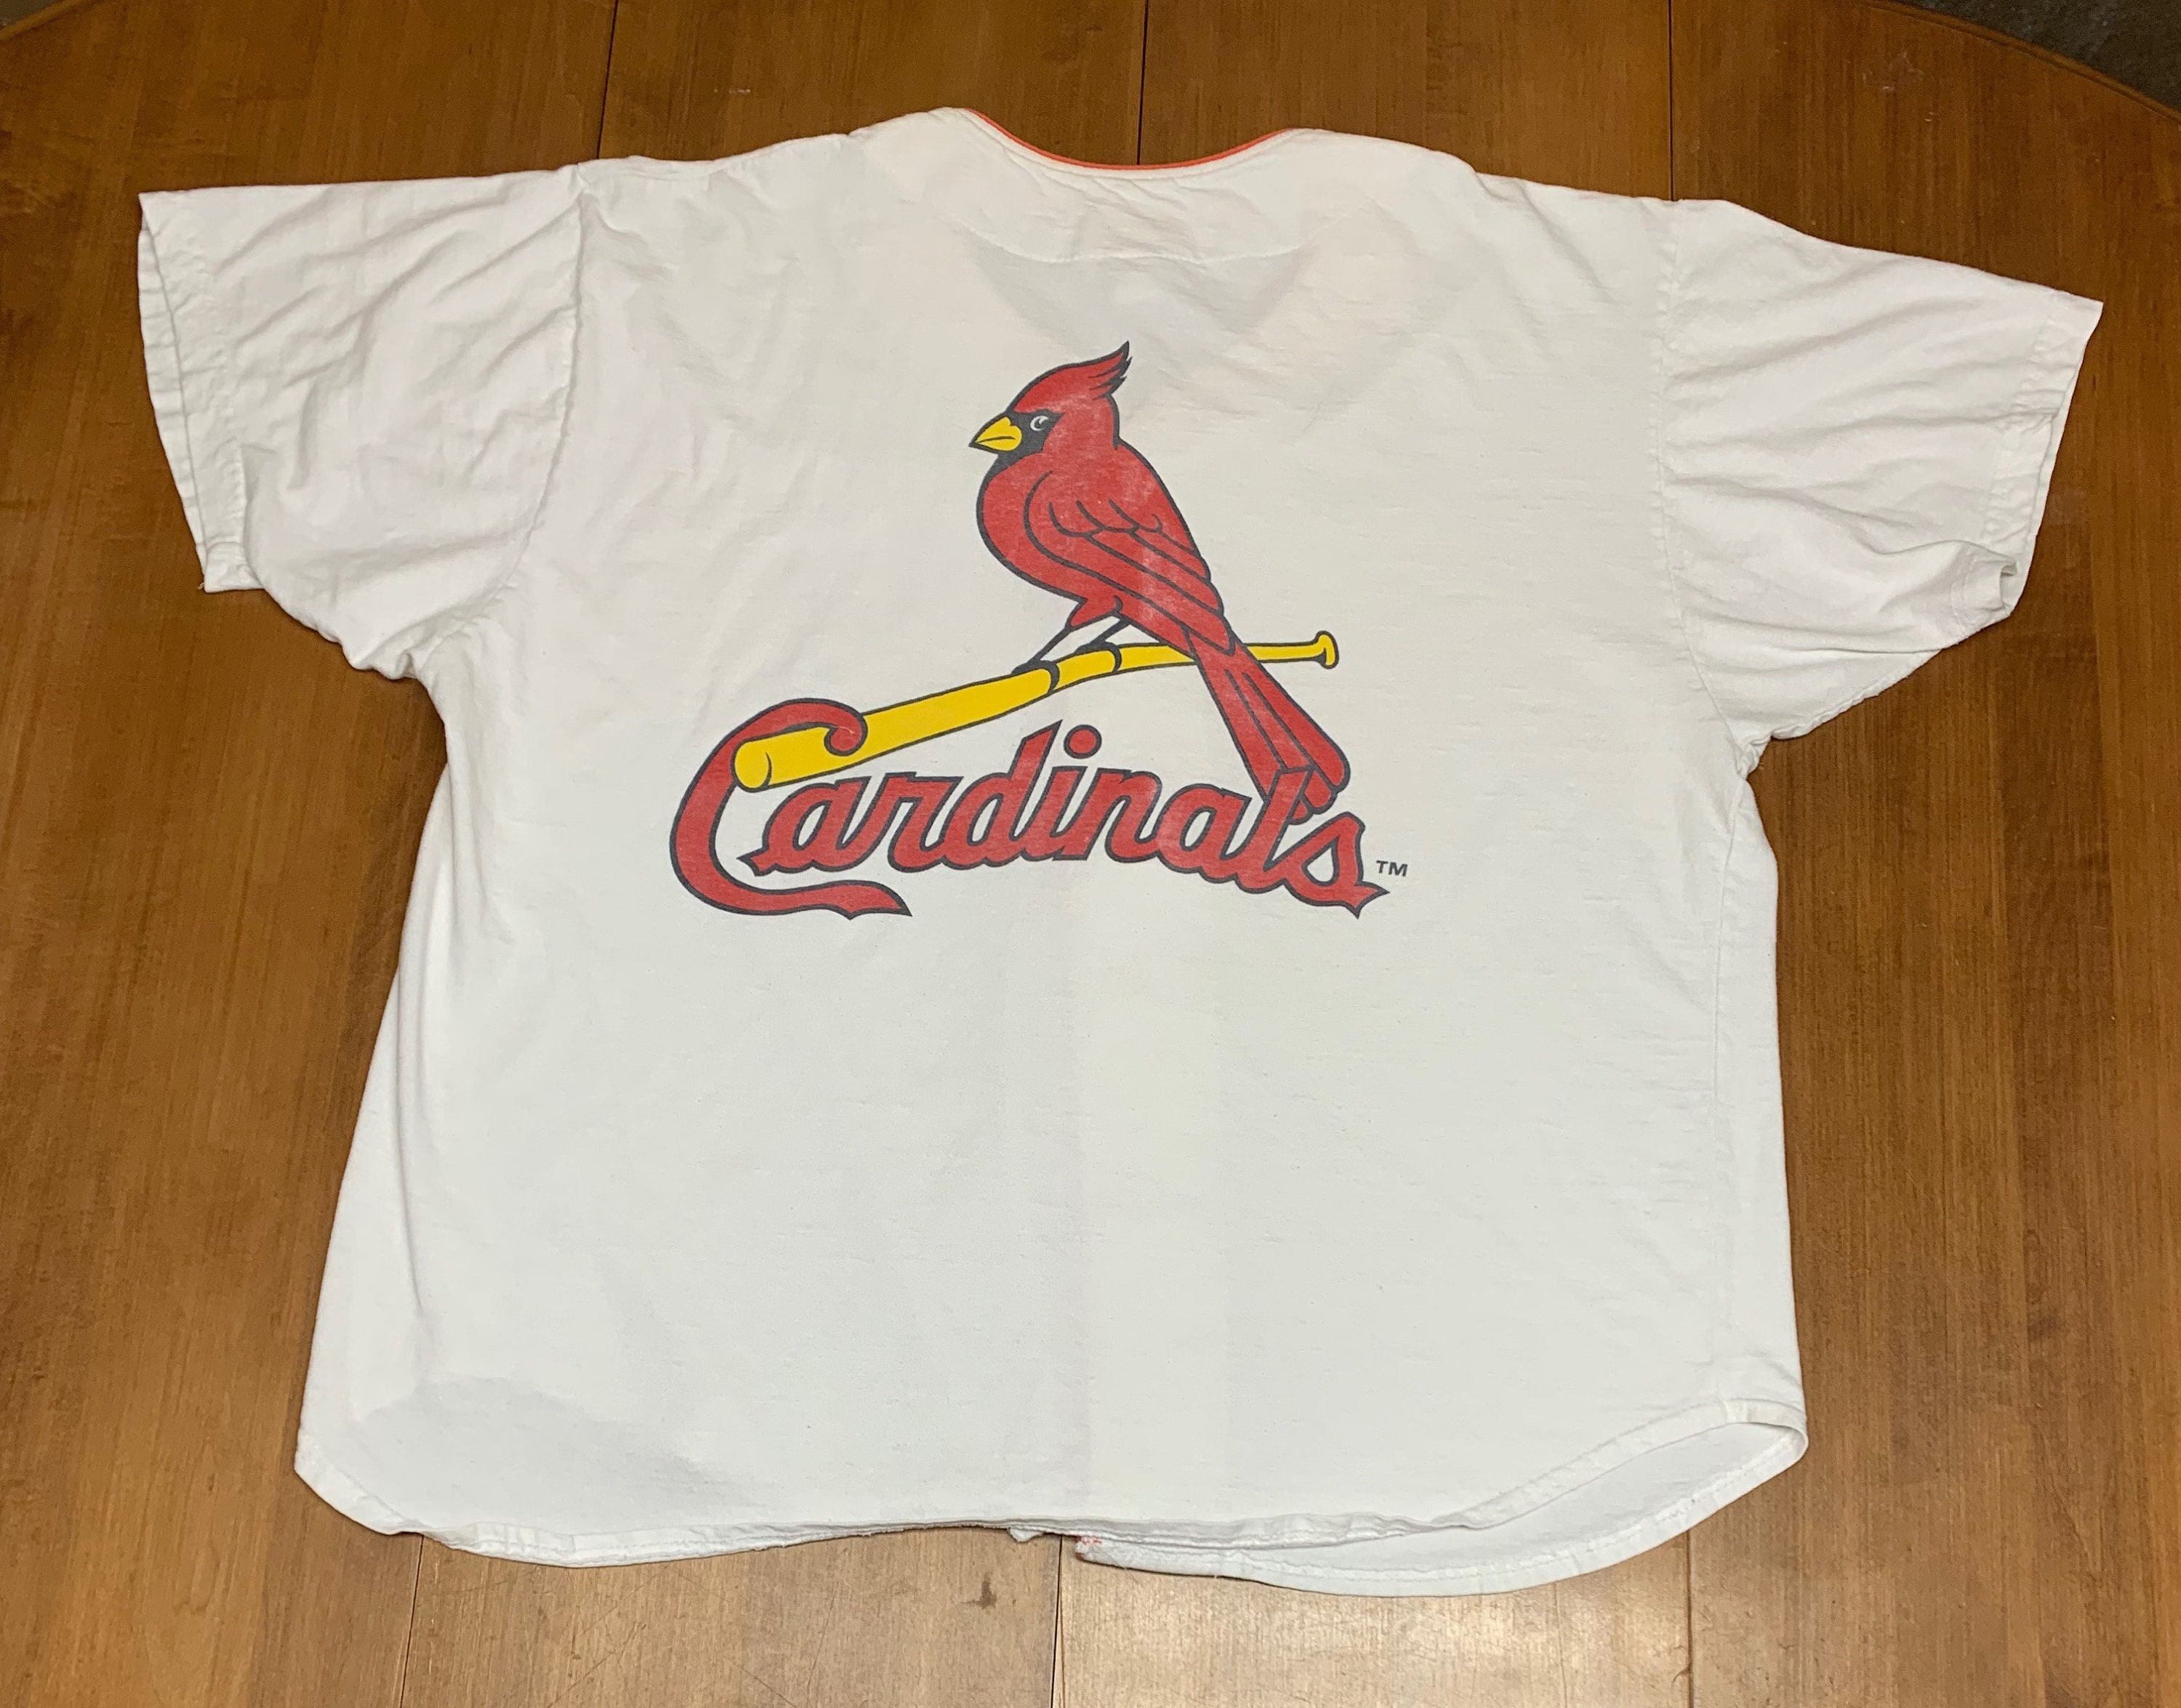 Shirtzi Vintage St Louis Cardinal Crewneck Sweatshirt / T-Shirt, Cardinals Est 1882 Sweatshirt, St Louis Baseball Game Day , Retro Cardinals Shirt